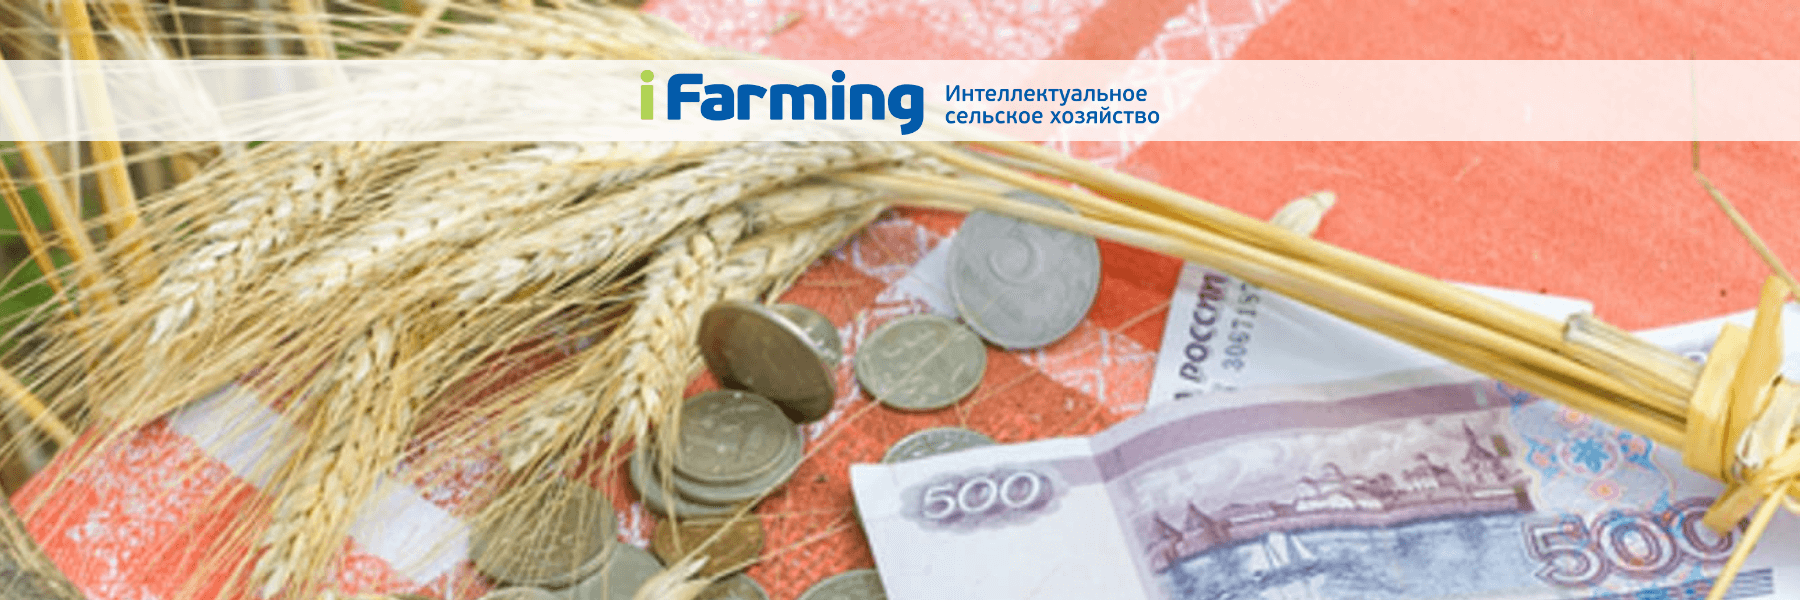 Возмещение затрат на проведение агротехнологических работ в области семеноводства сельскохозяйственных культур.